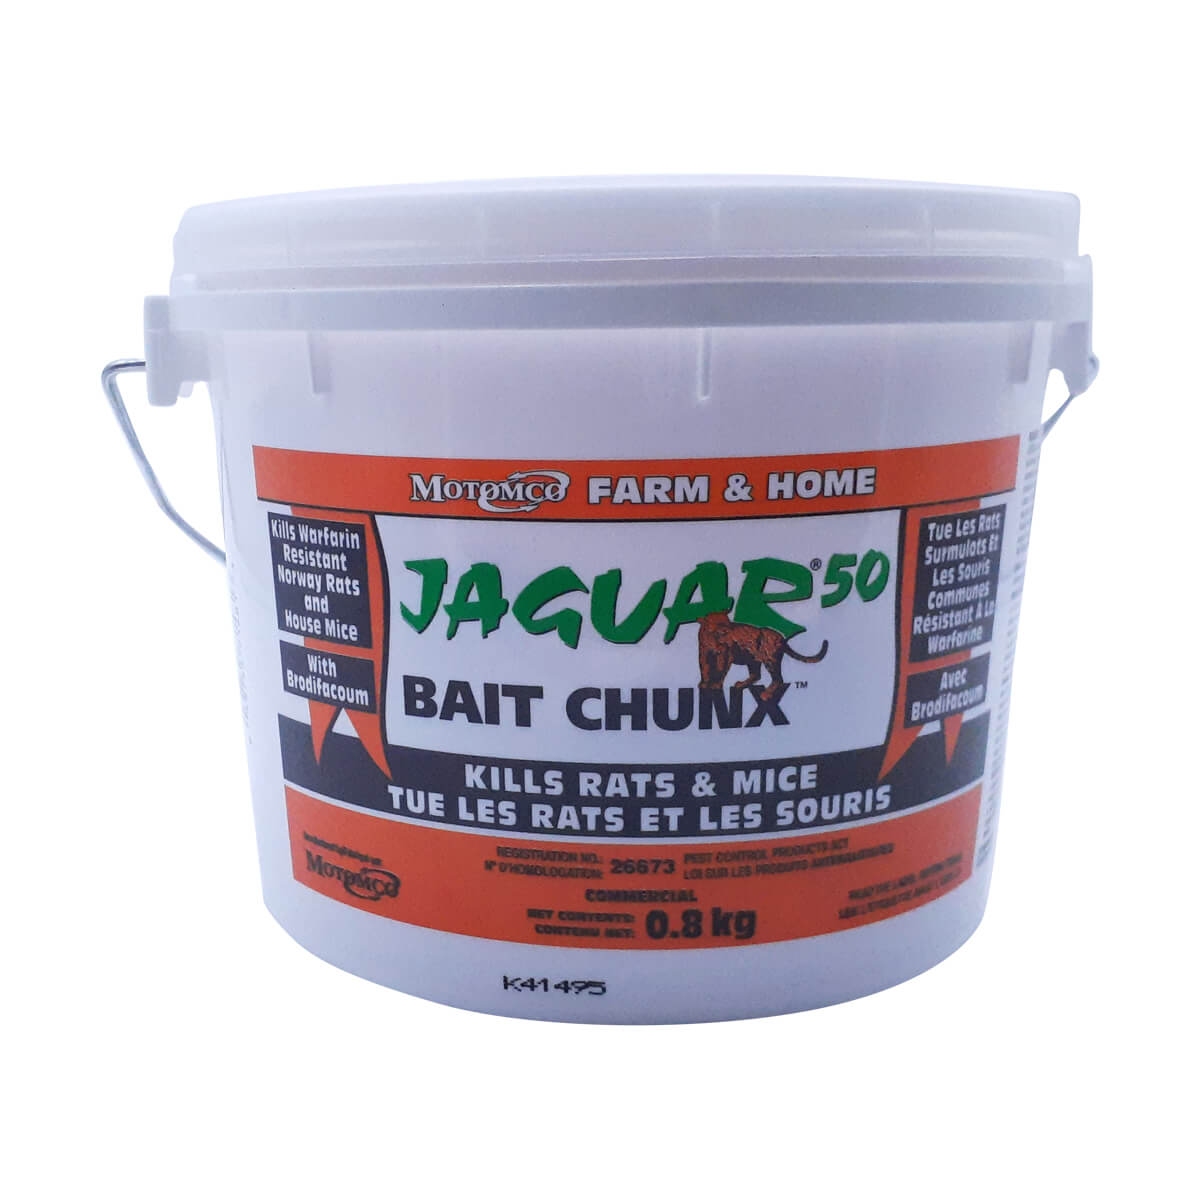 Jaguar Bait Chunx - 0.8 kg Pail